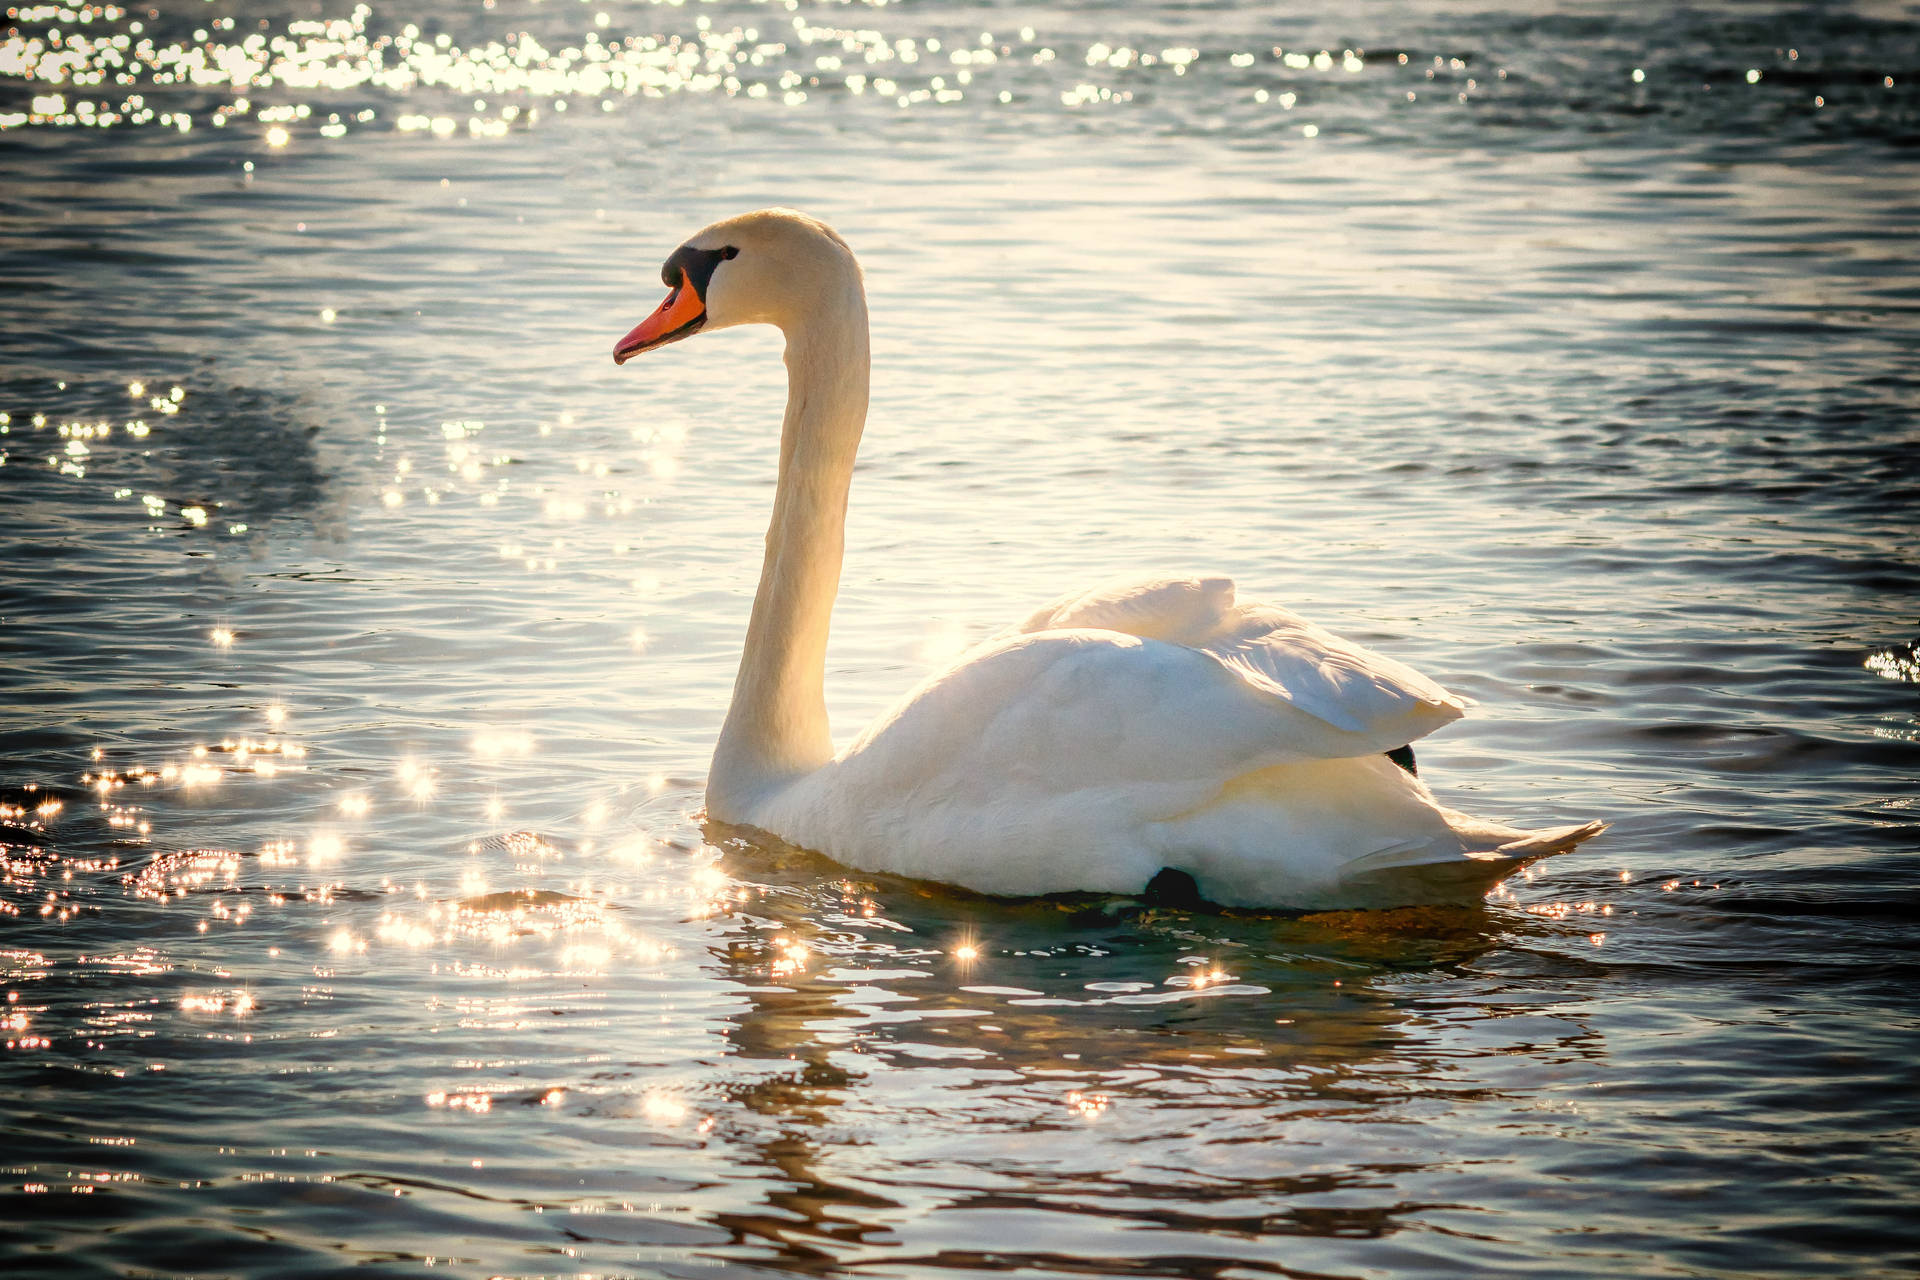 Swimming White Swan Wild Animal